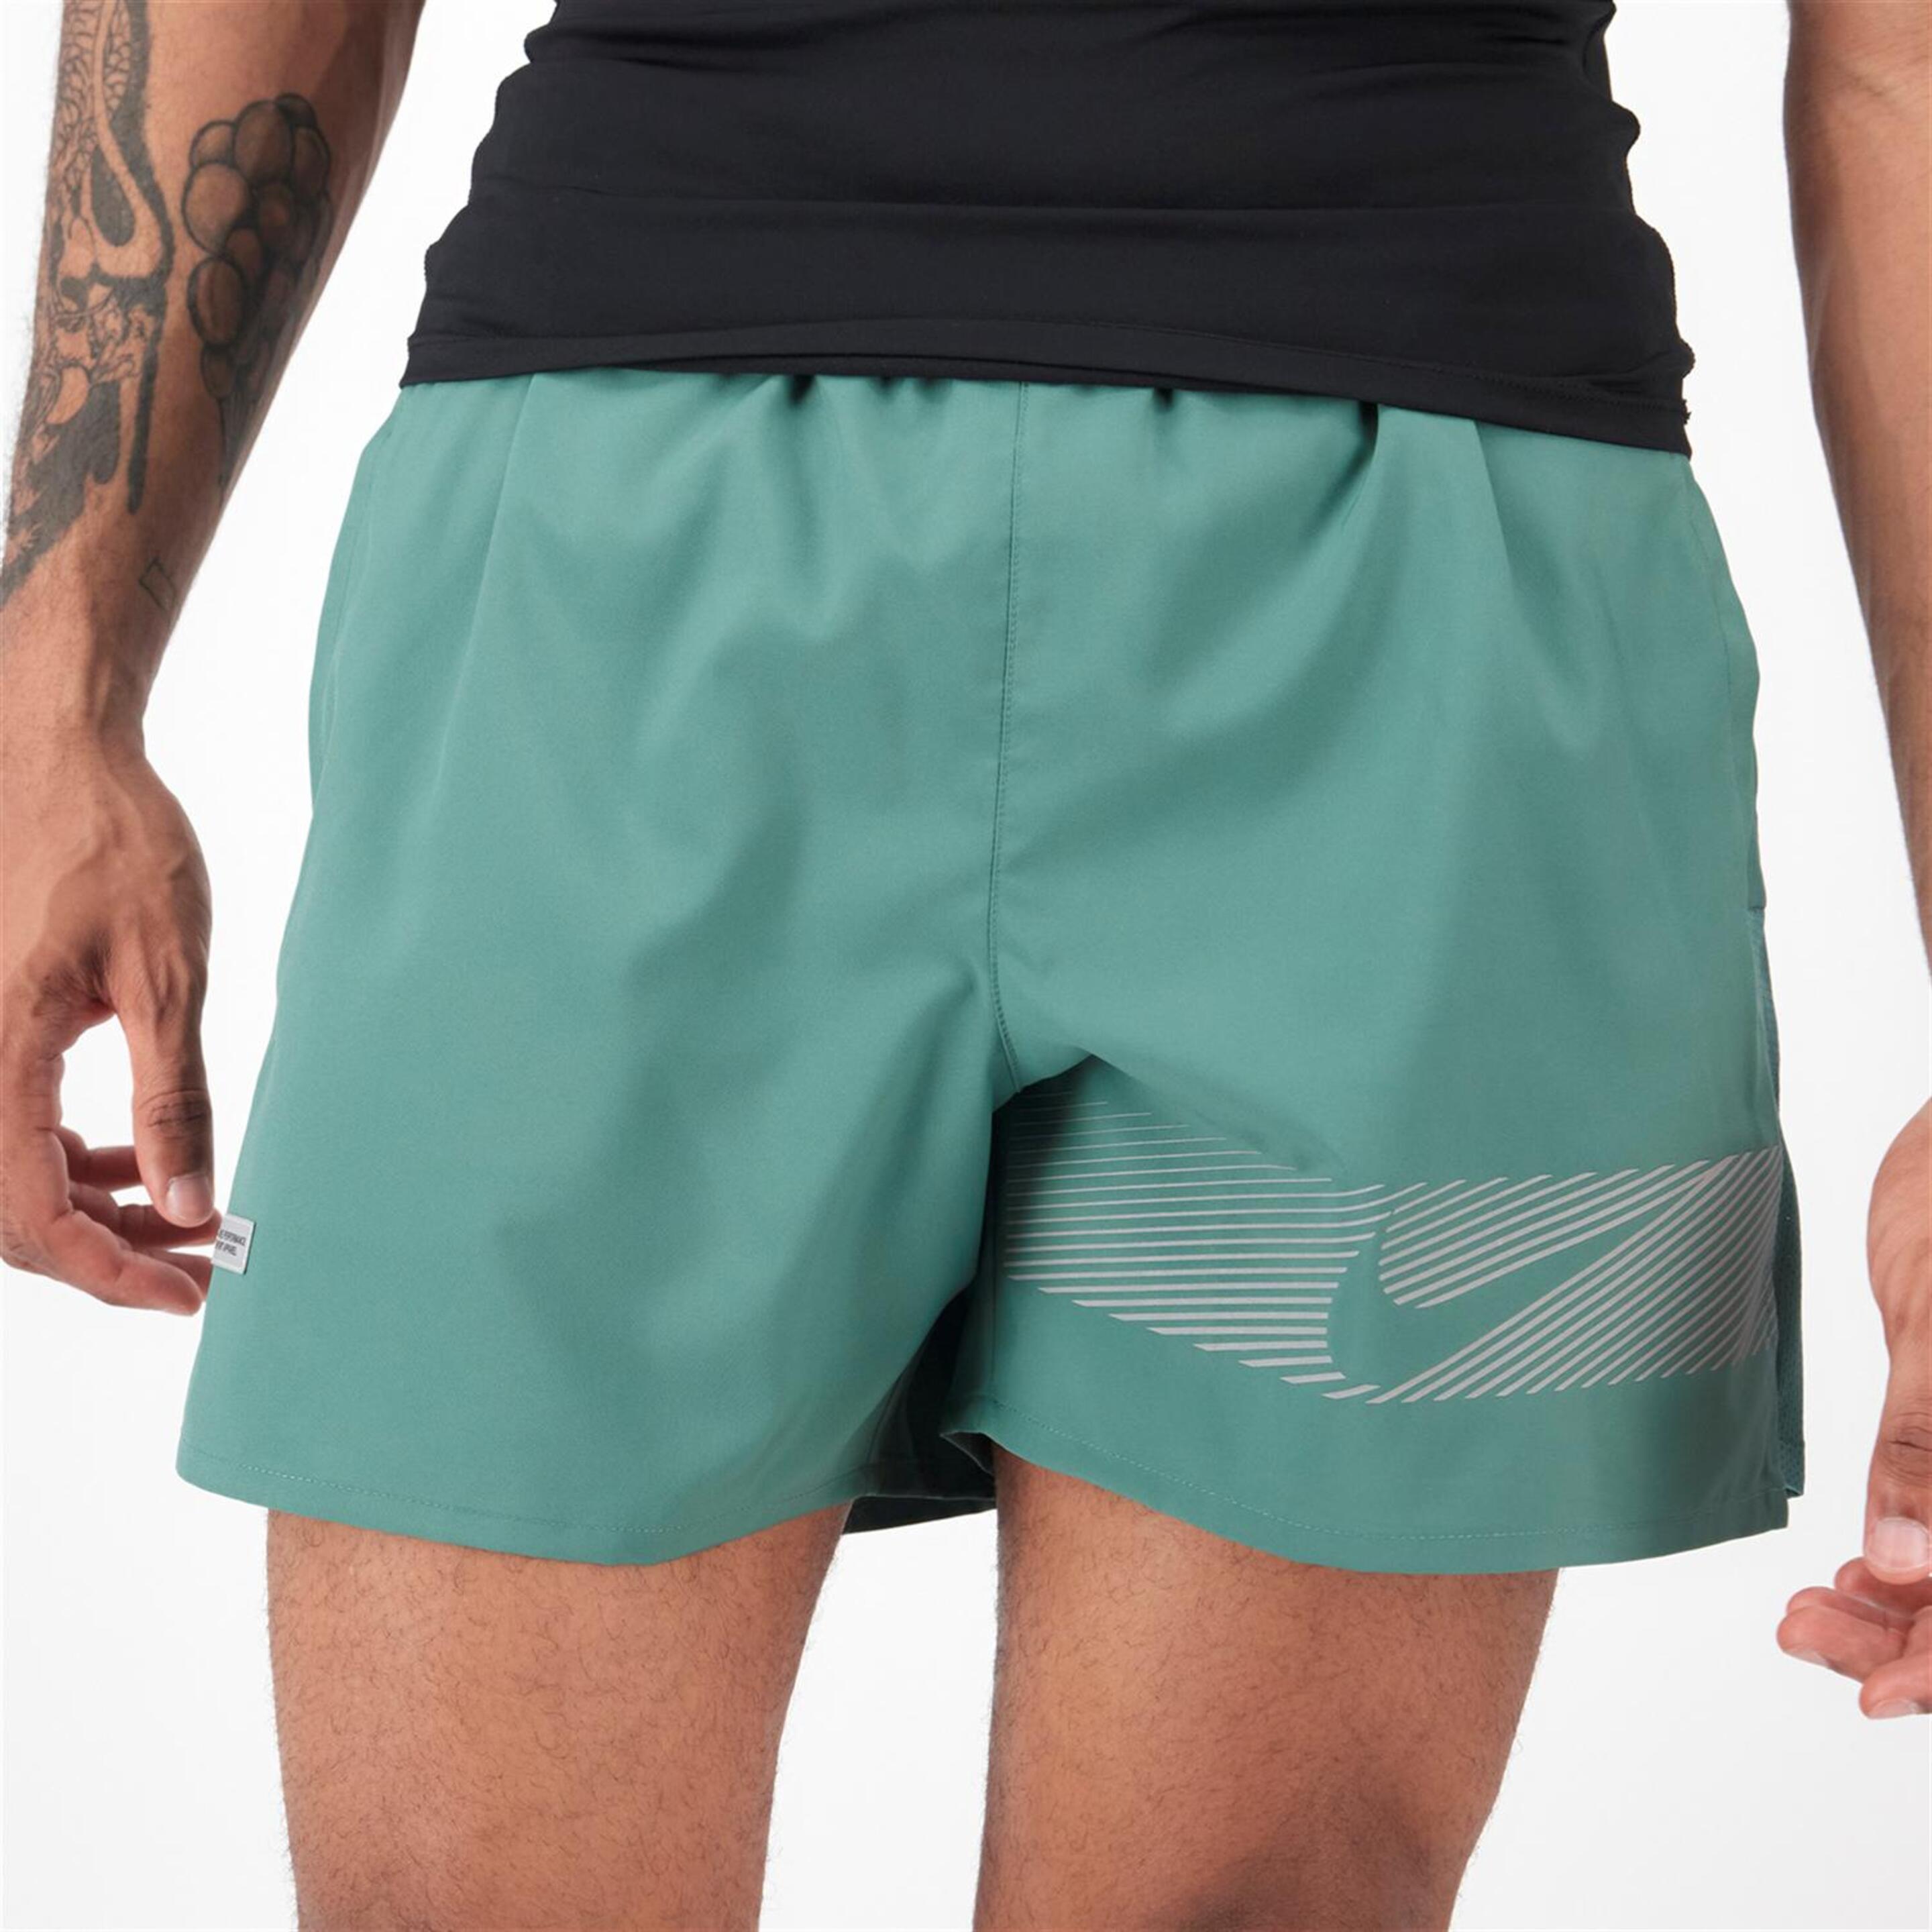 Nike Challenger - Kaki - Pantalón Running Hombre